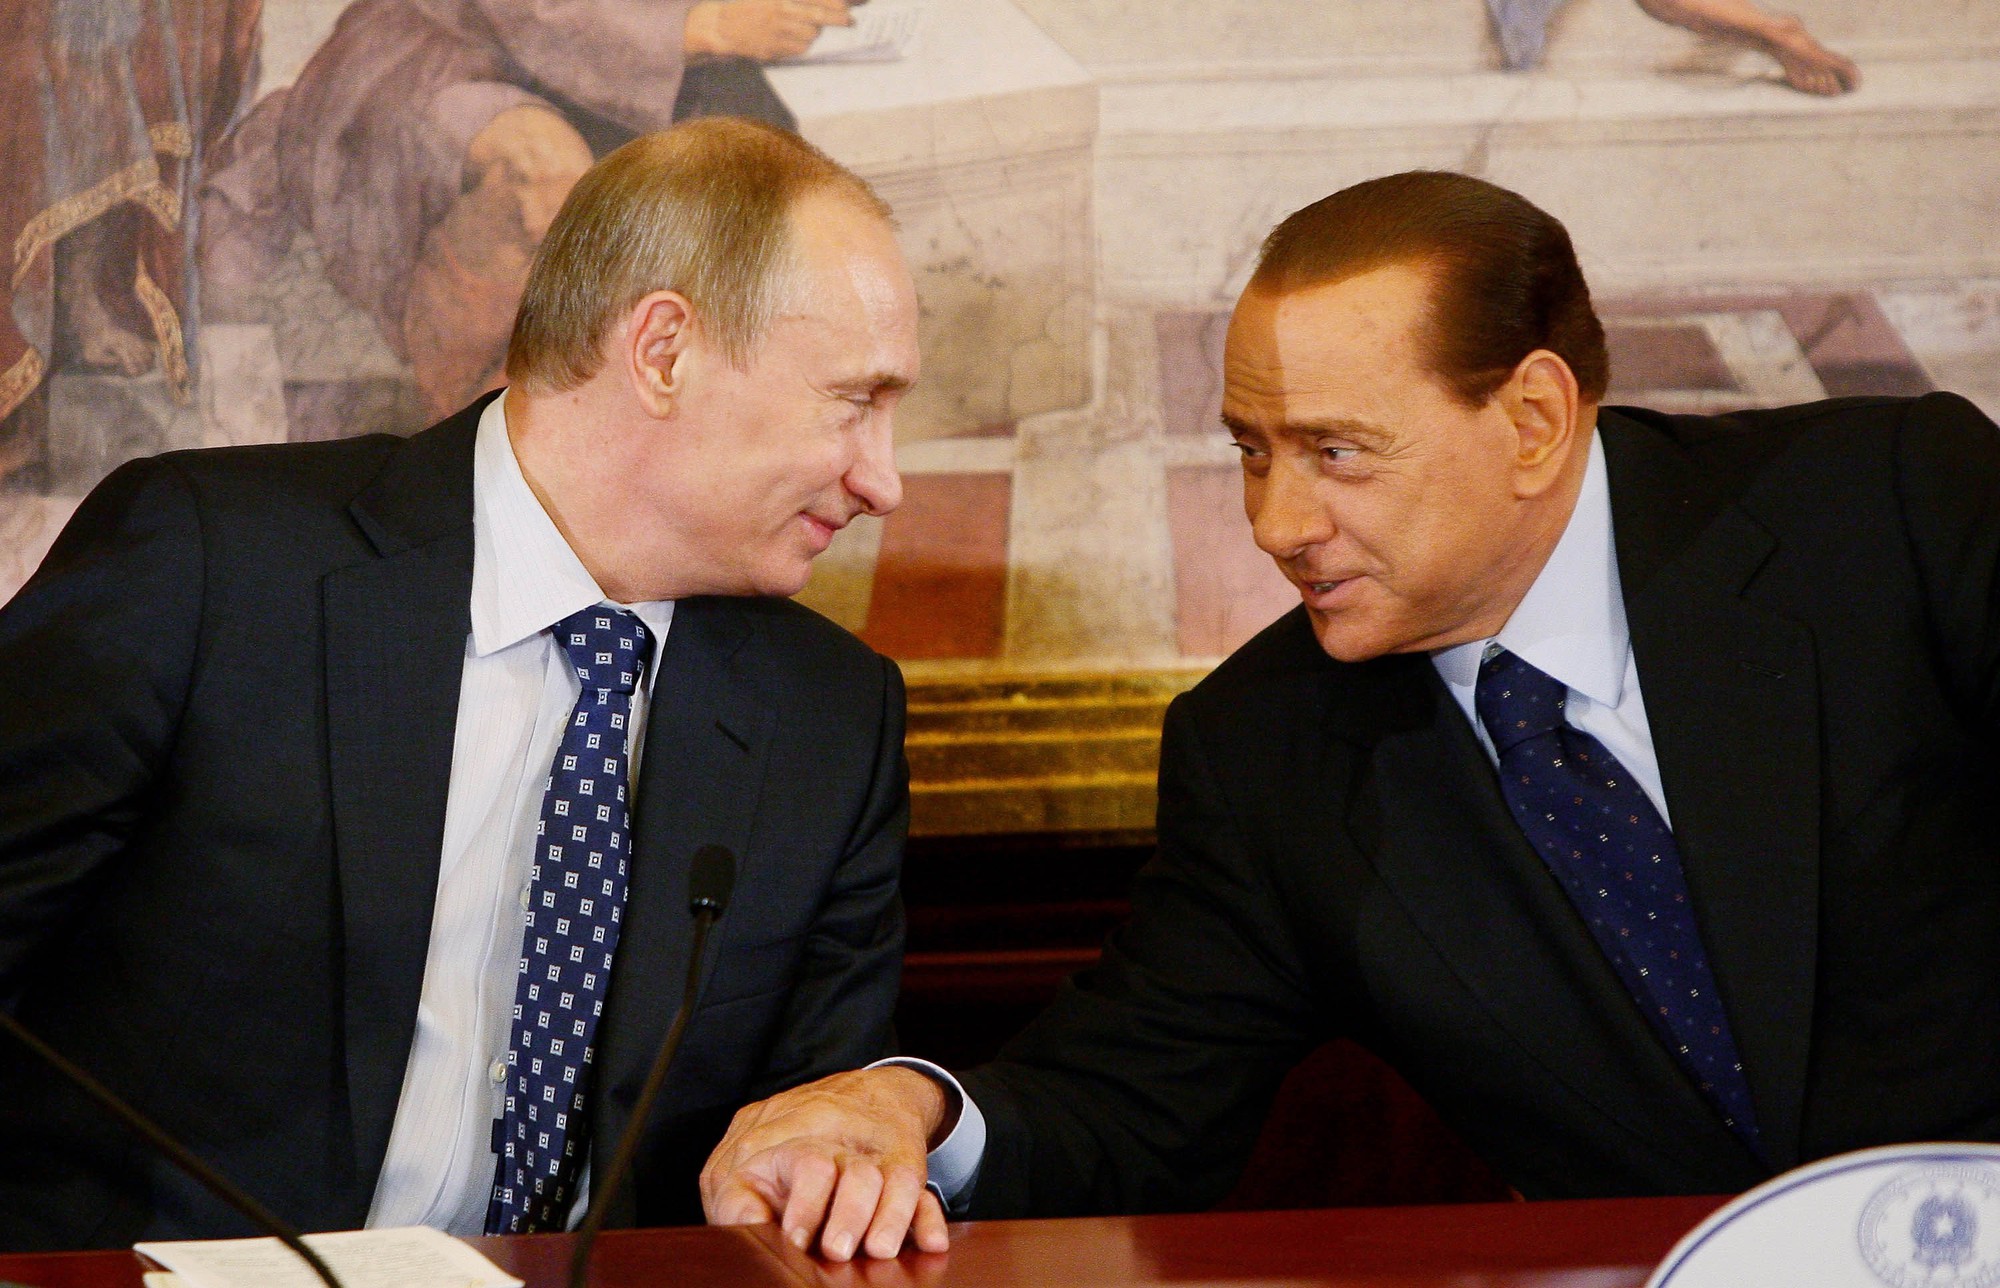 Cựu Thủ tướng Italia Silvio Berlusconi qua đời, Tổng thống Nga Putin thương tiếc &quot;người bạn thực sự&quot; - Ảnh 2.